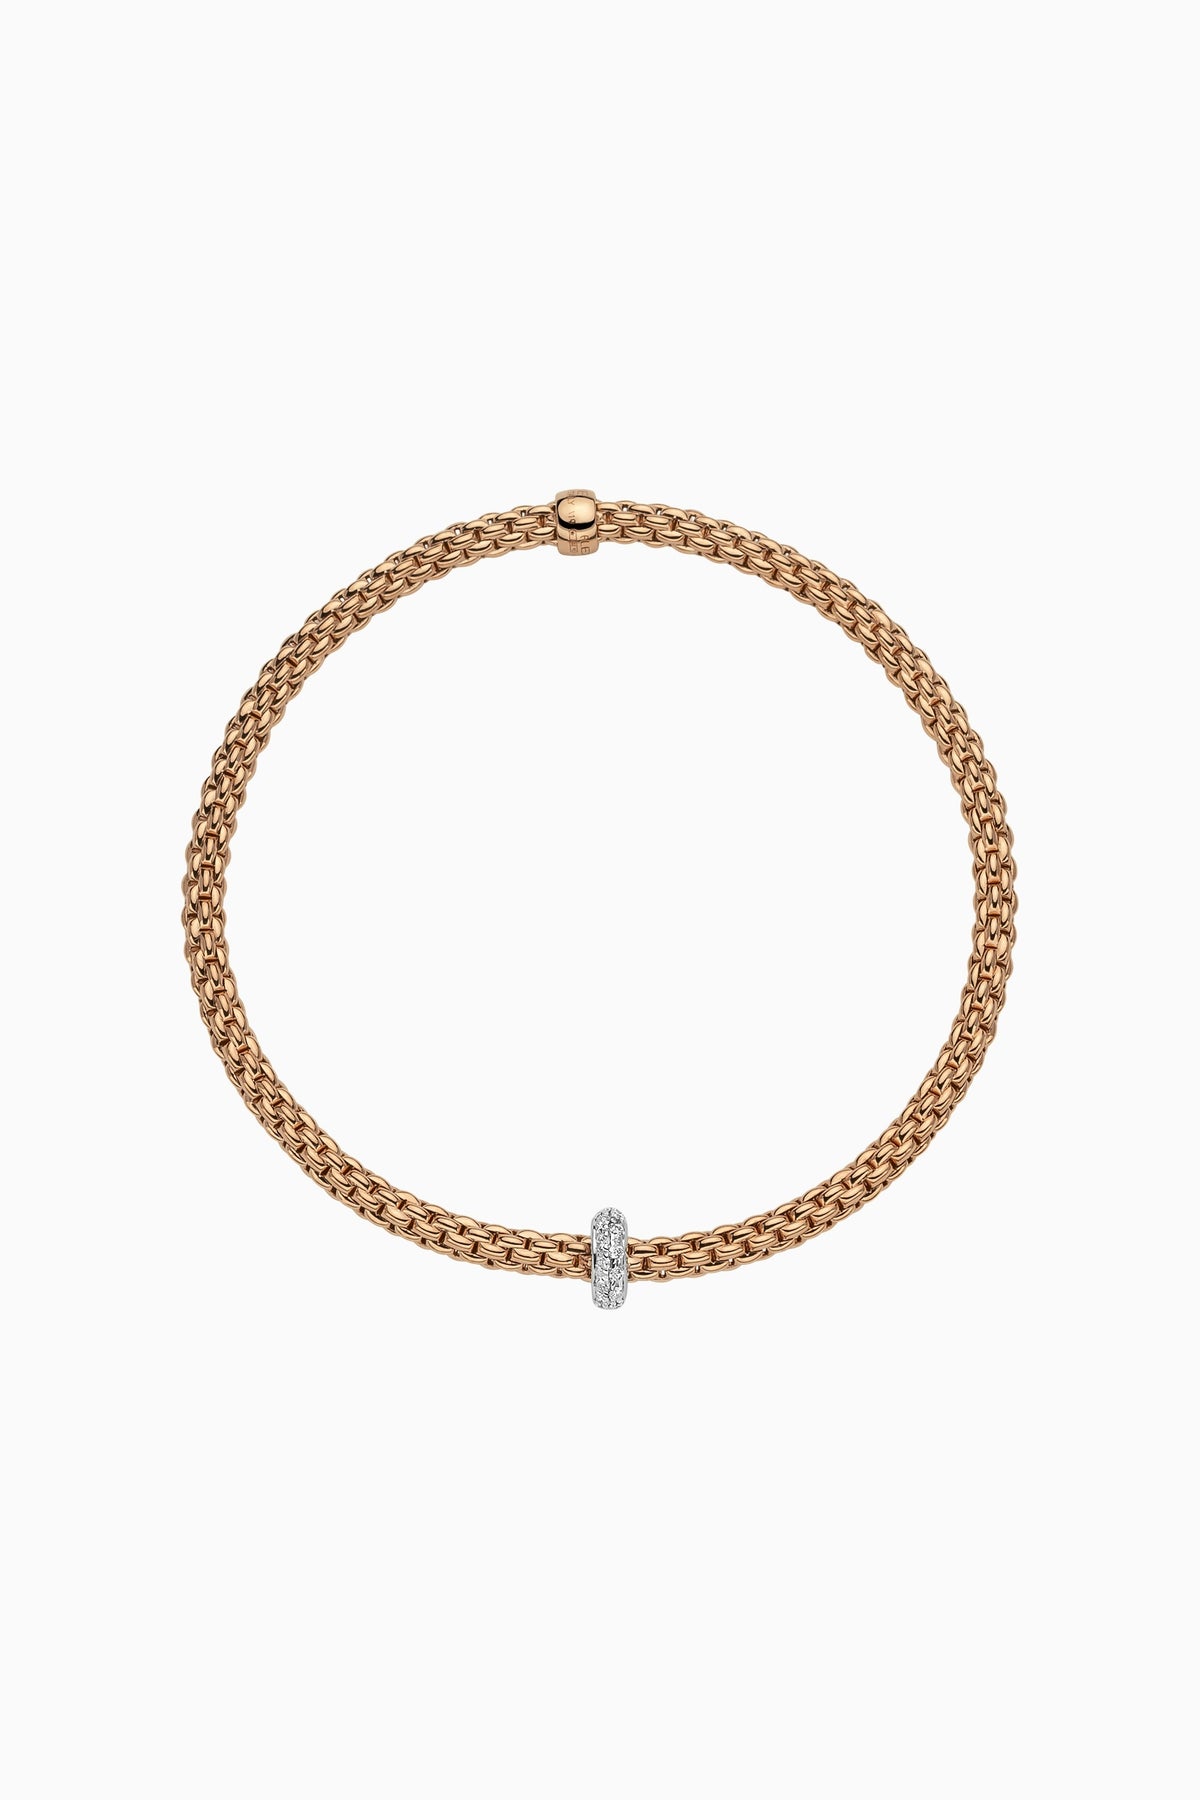 Fope Prima Flex'it Bracelet with Diamonds – Jackson Hole Jewelry Company